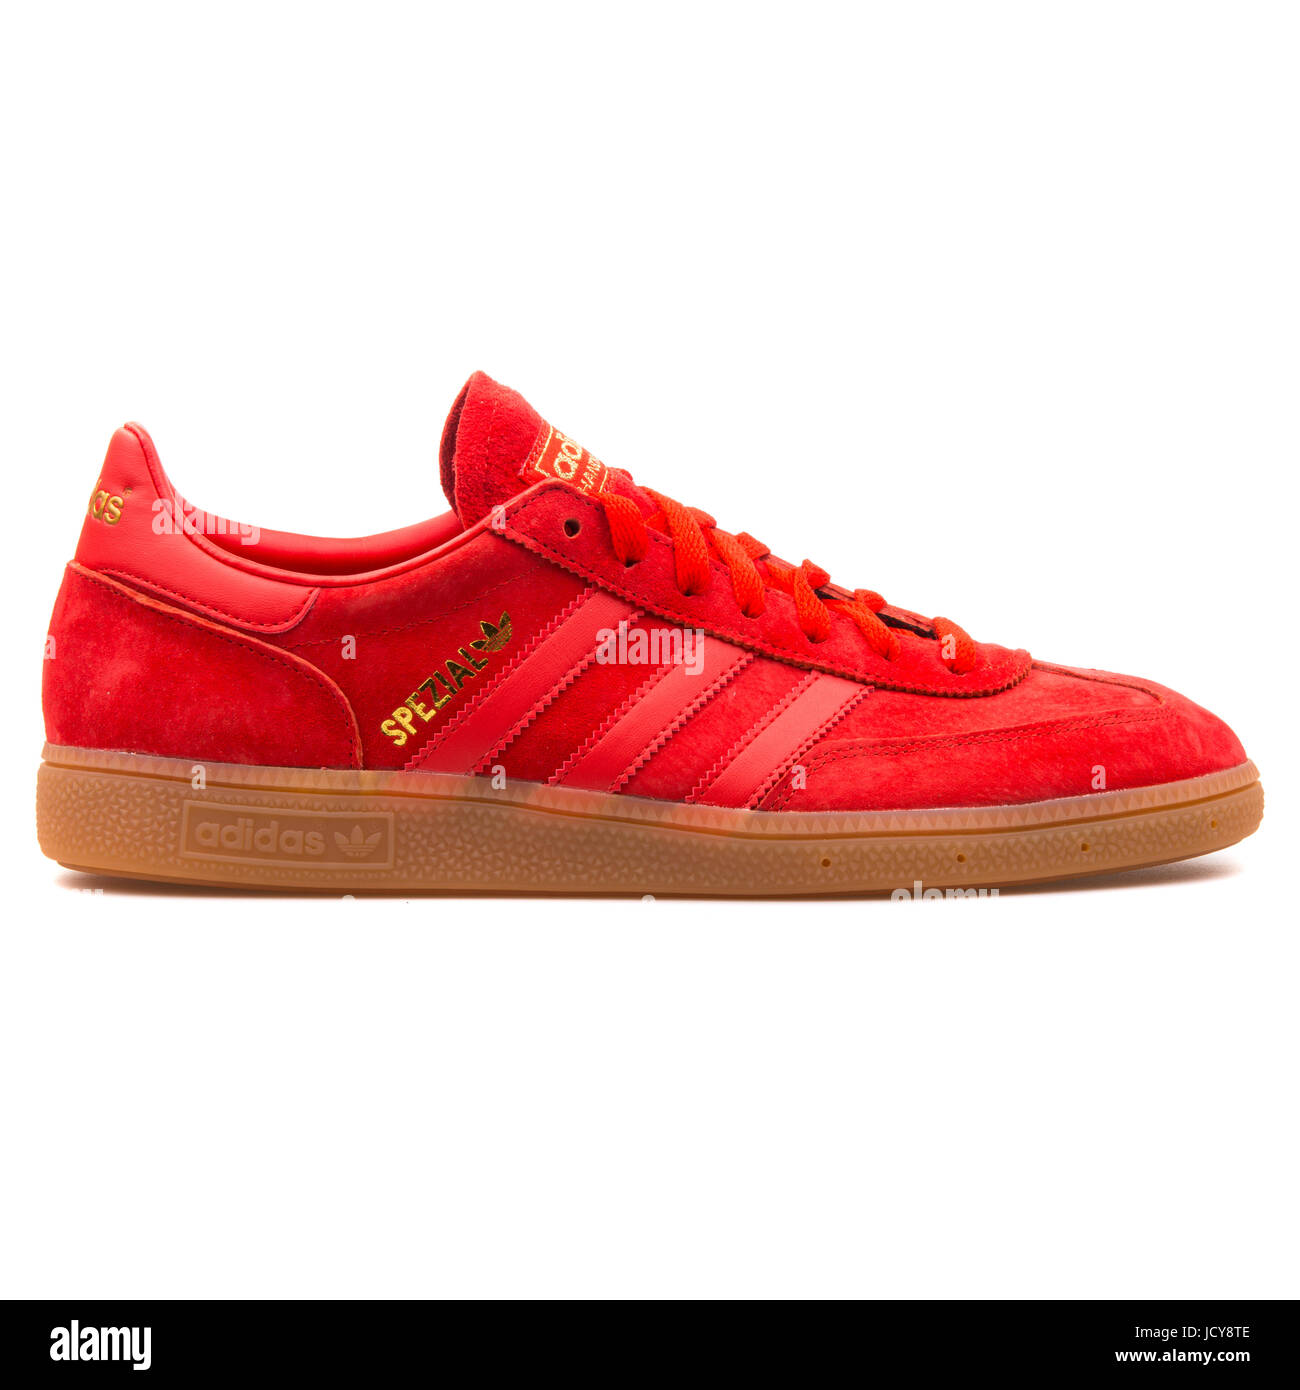 Adidas Spezial Hommes rouge de chaussures de sport - B35209 Photo Stock -  Alamy